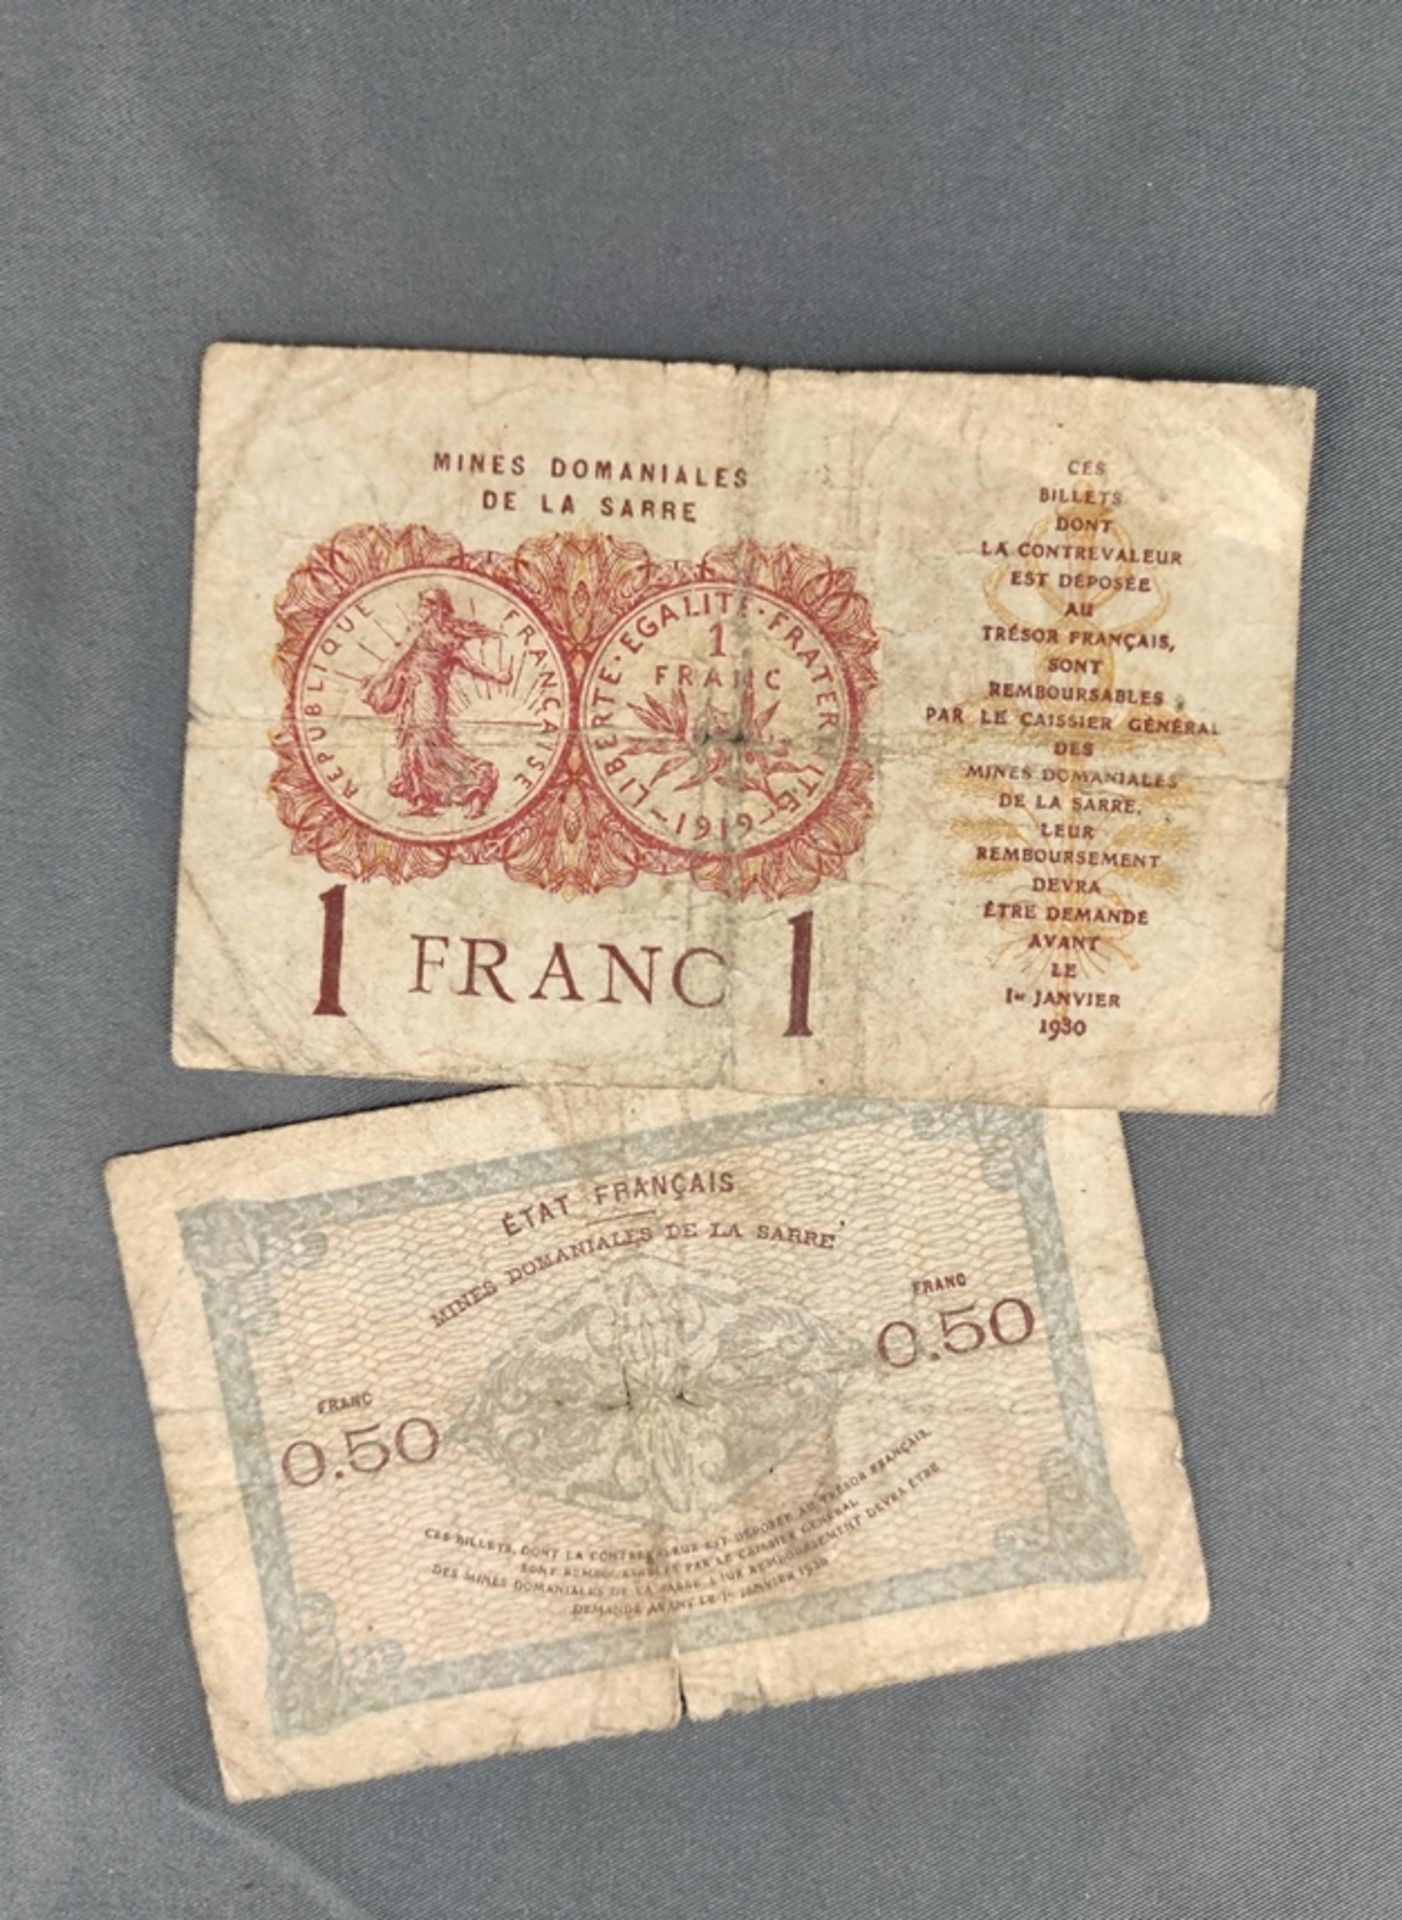 2 Scheine, Staatsminen der Saar, "Mines domaniales de la sarre", 50 centimes und 1 Franc 1919